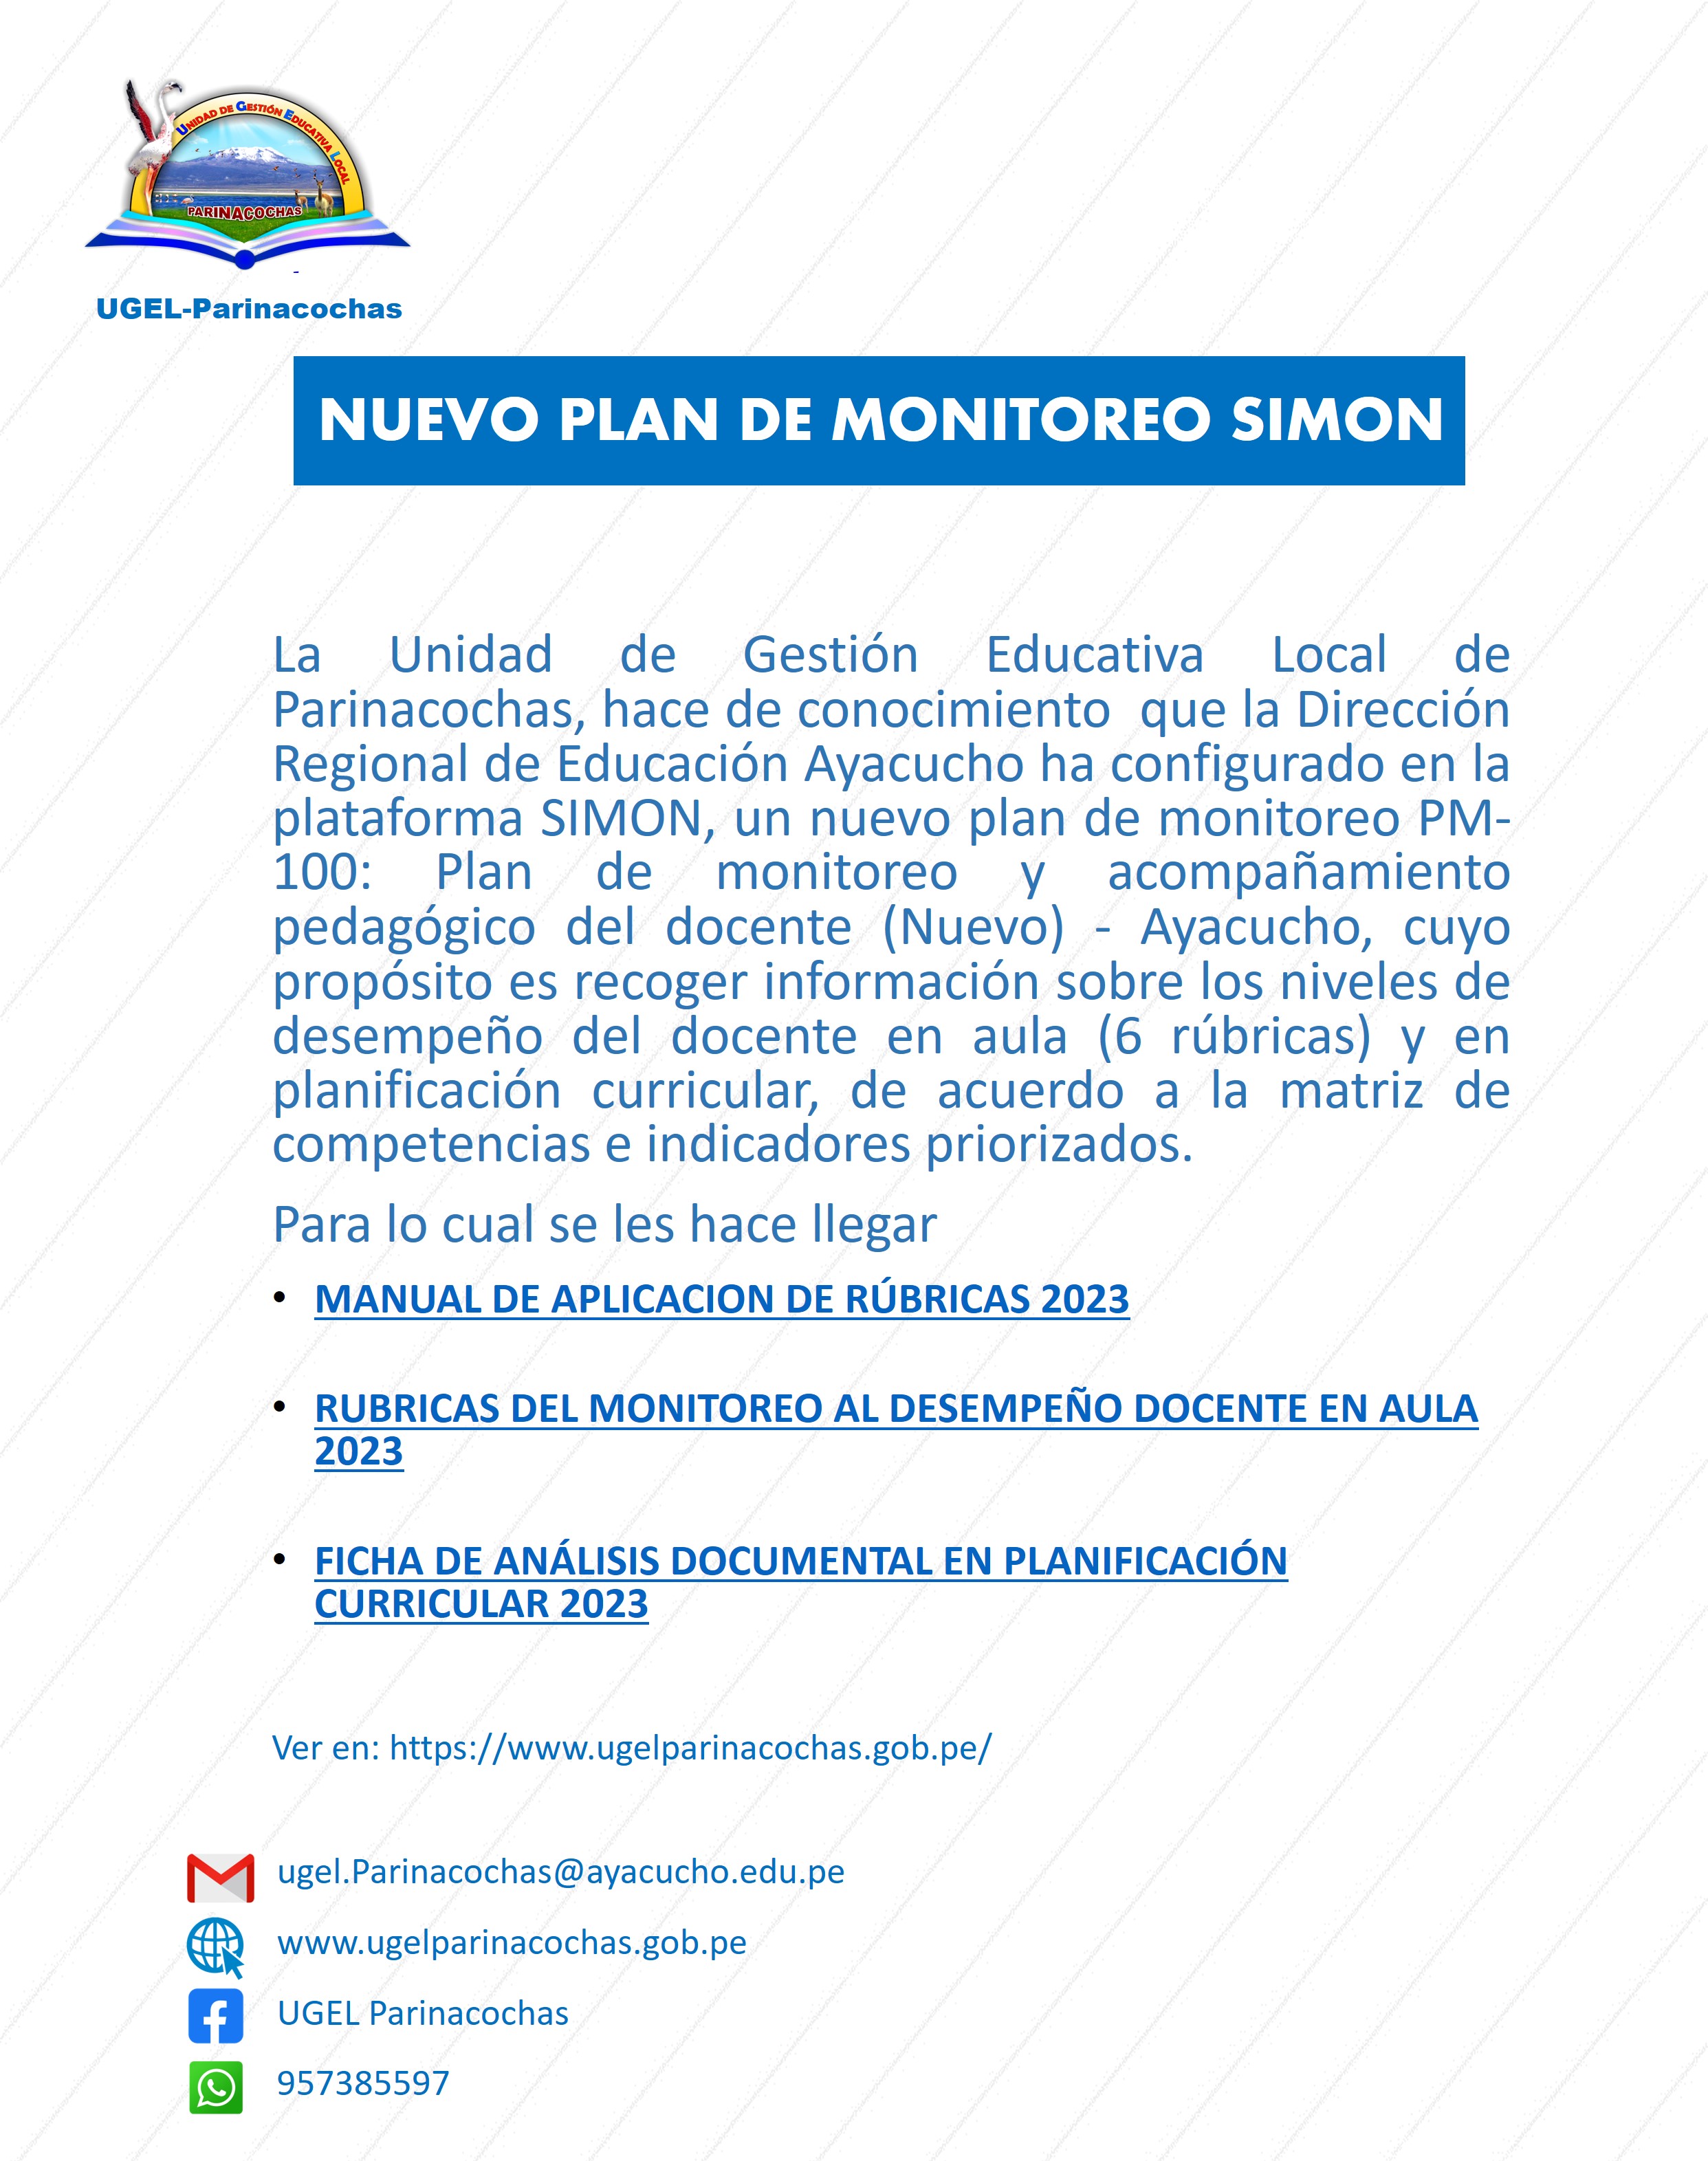 Comunica nuevo registro del monitoreo y acompañamiento pedagógico docente en la plataforma SIMON